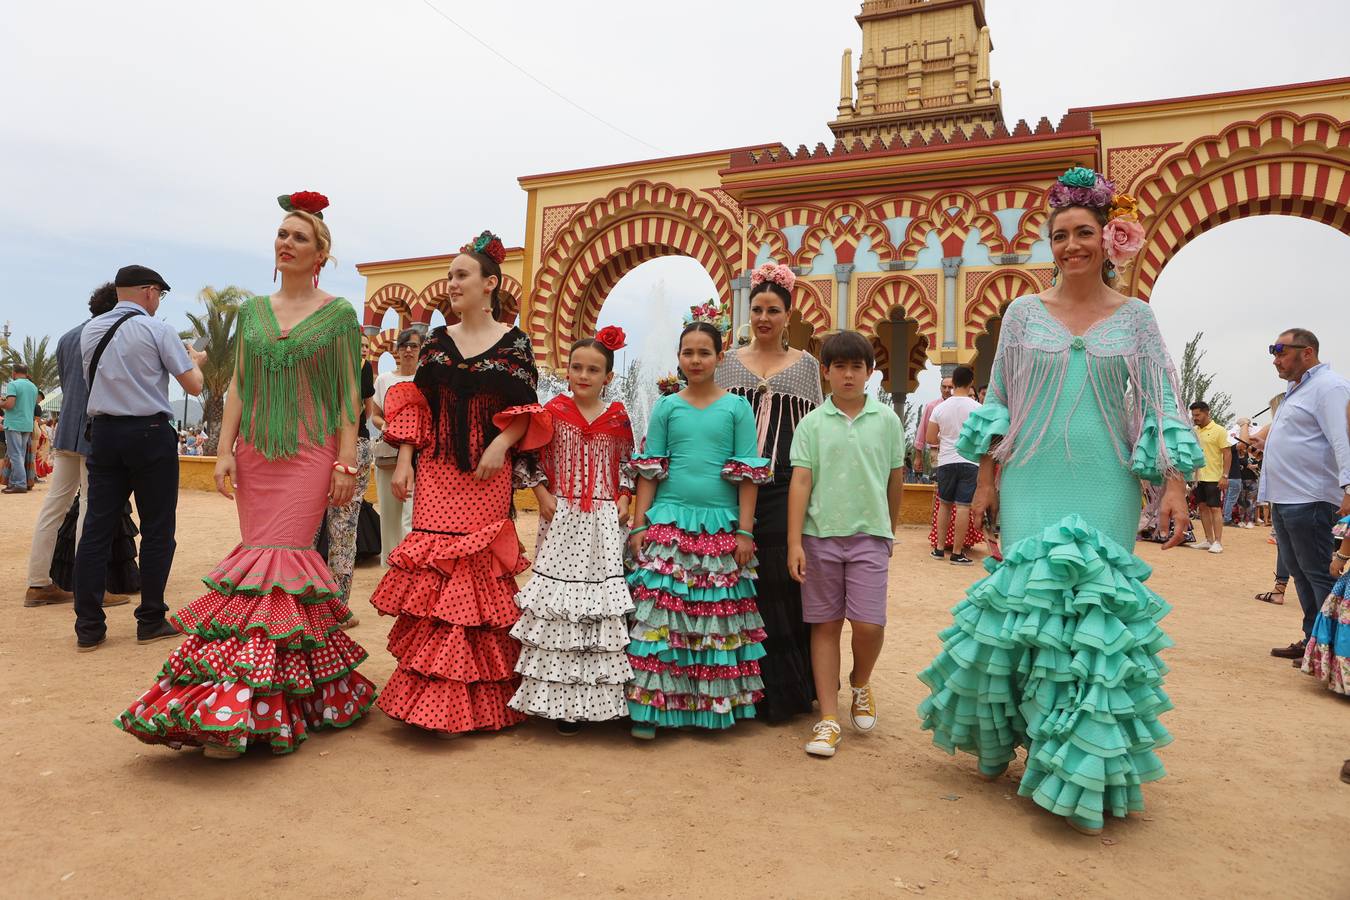 El familiar ambiente del domingo de Feria de Córdoba, en imágenes